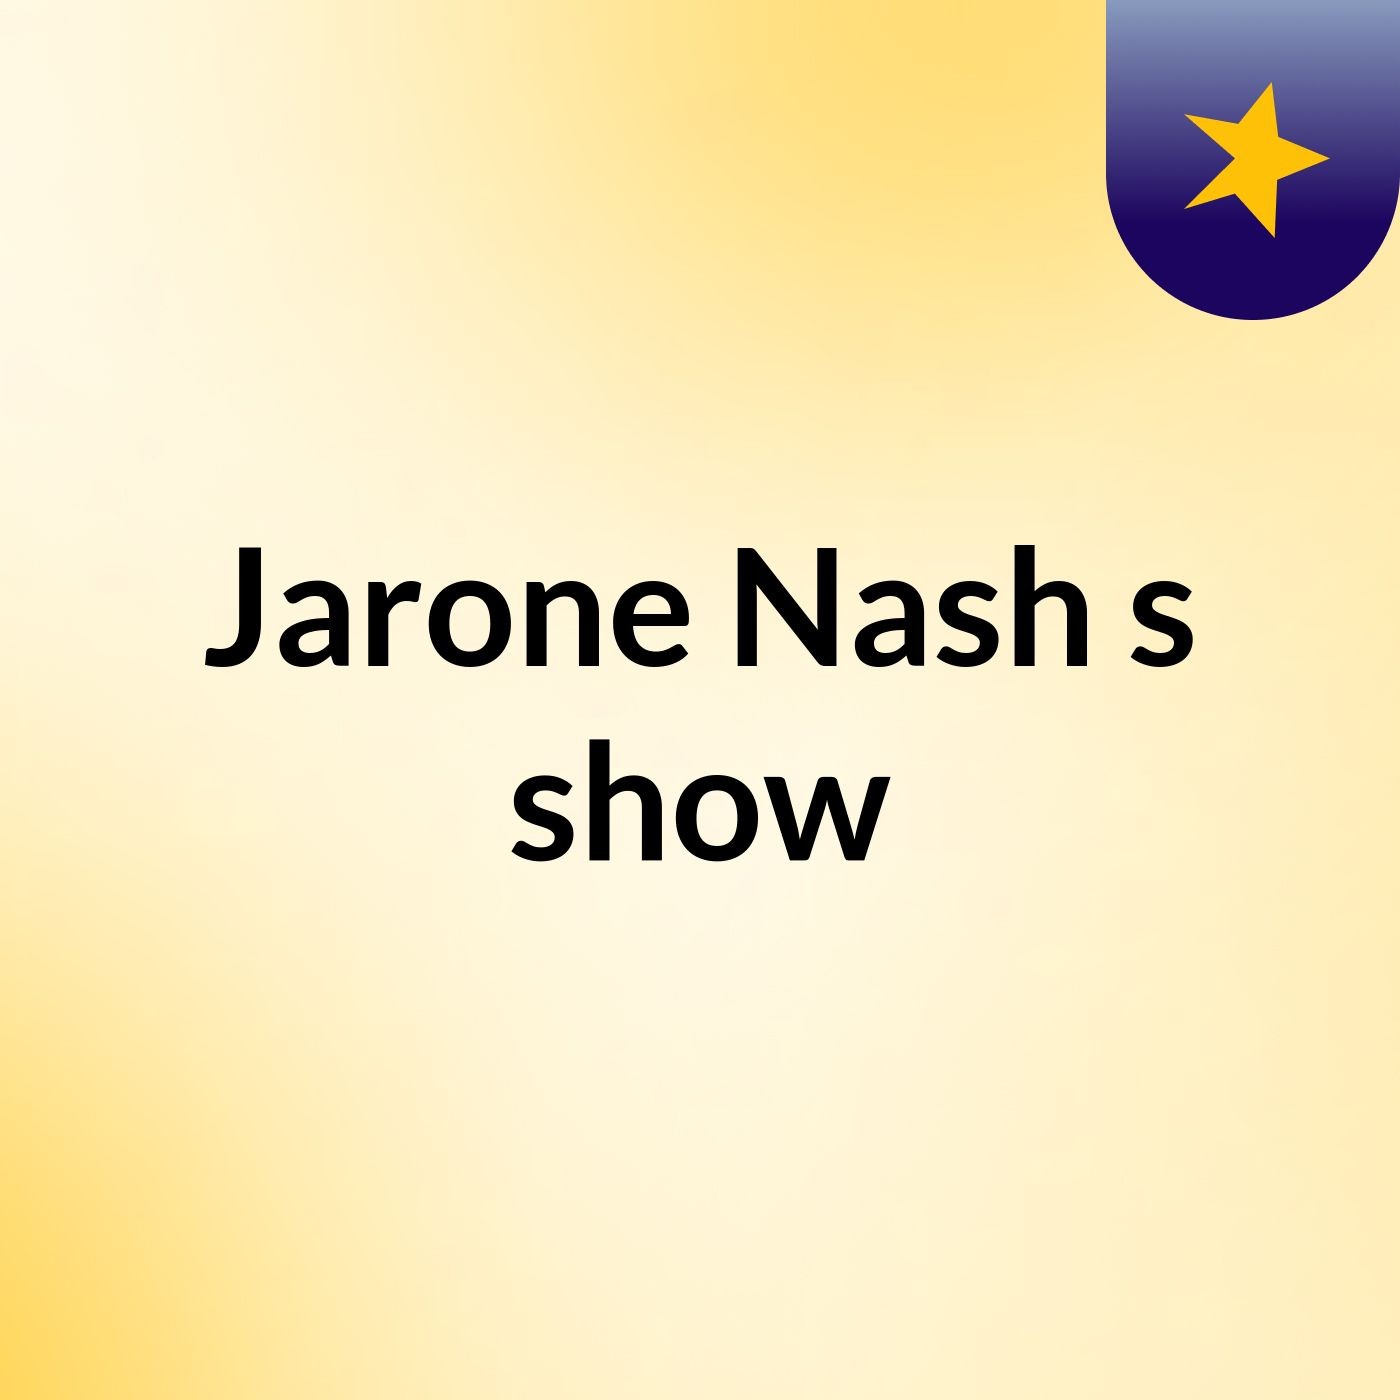 Jarone Nash's show